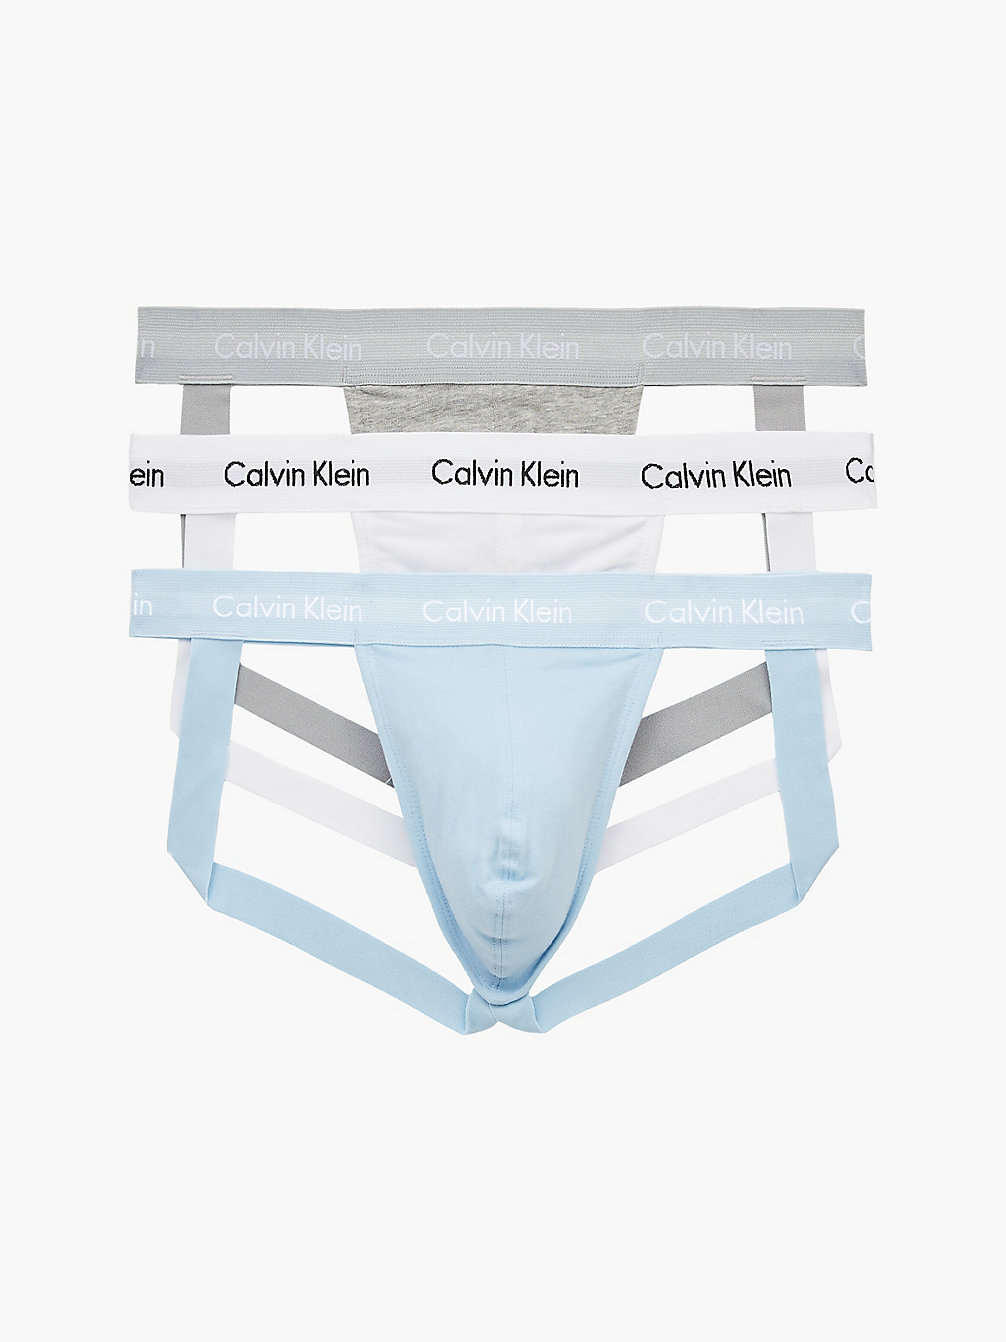 GREY HEATHER/WHITE/RAIN DANCE 3 Pack Jock Straps - Cotton Stretch undefined men Calvin Klein